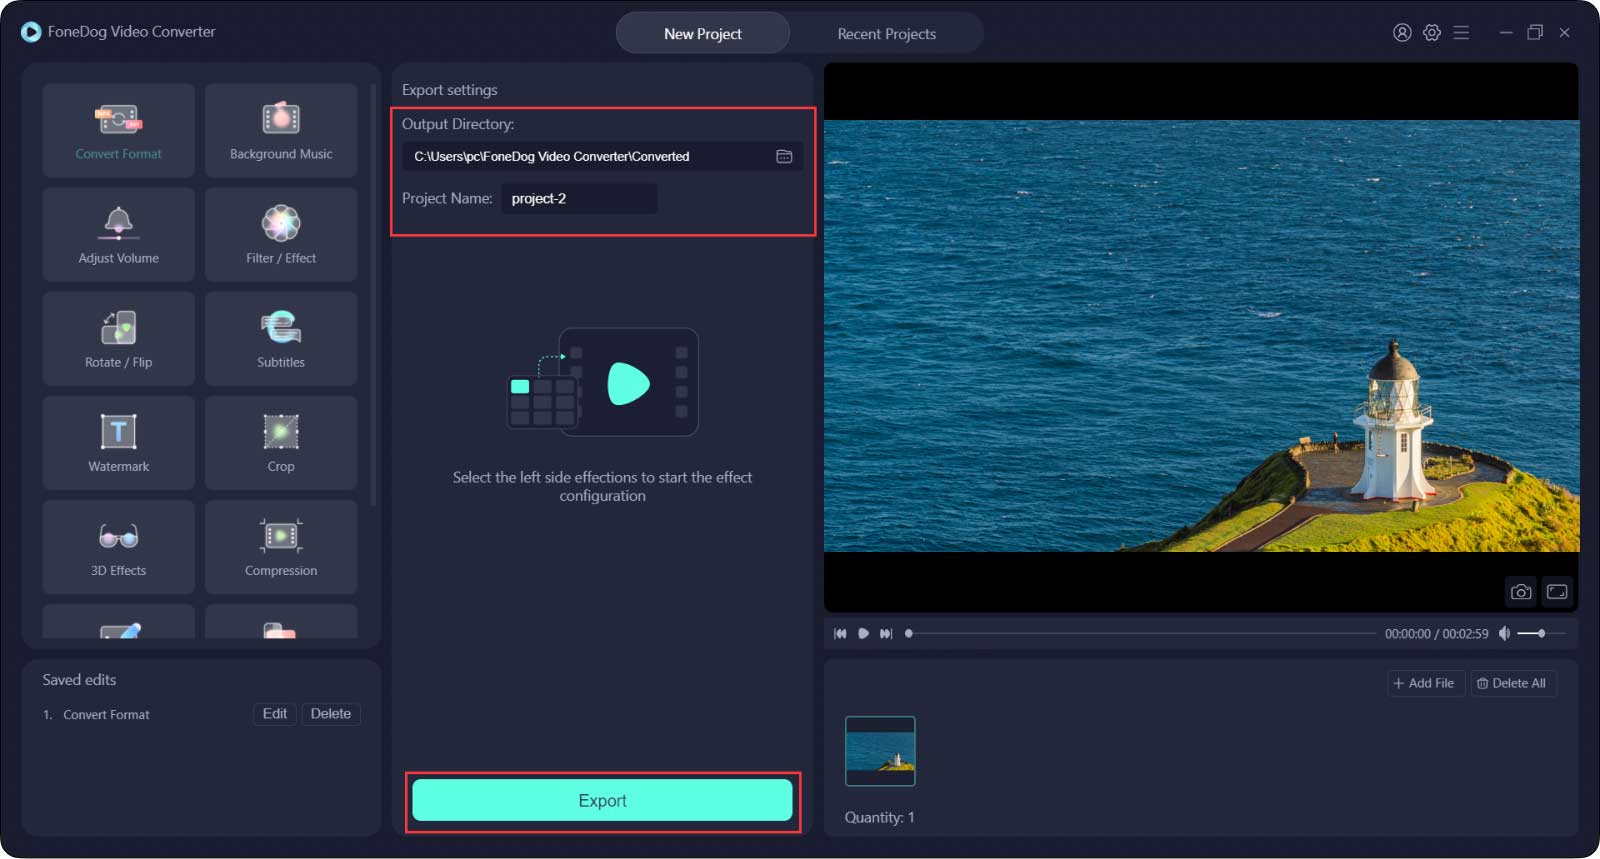 Aplicación de edición de video de Instagram- FoneDog Video Converter-Exportar archivos